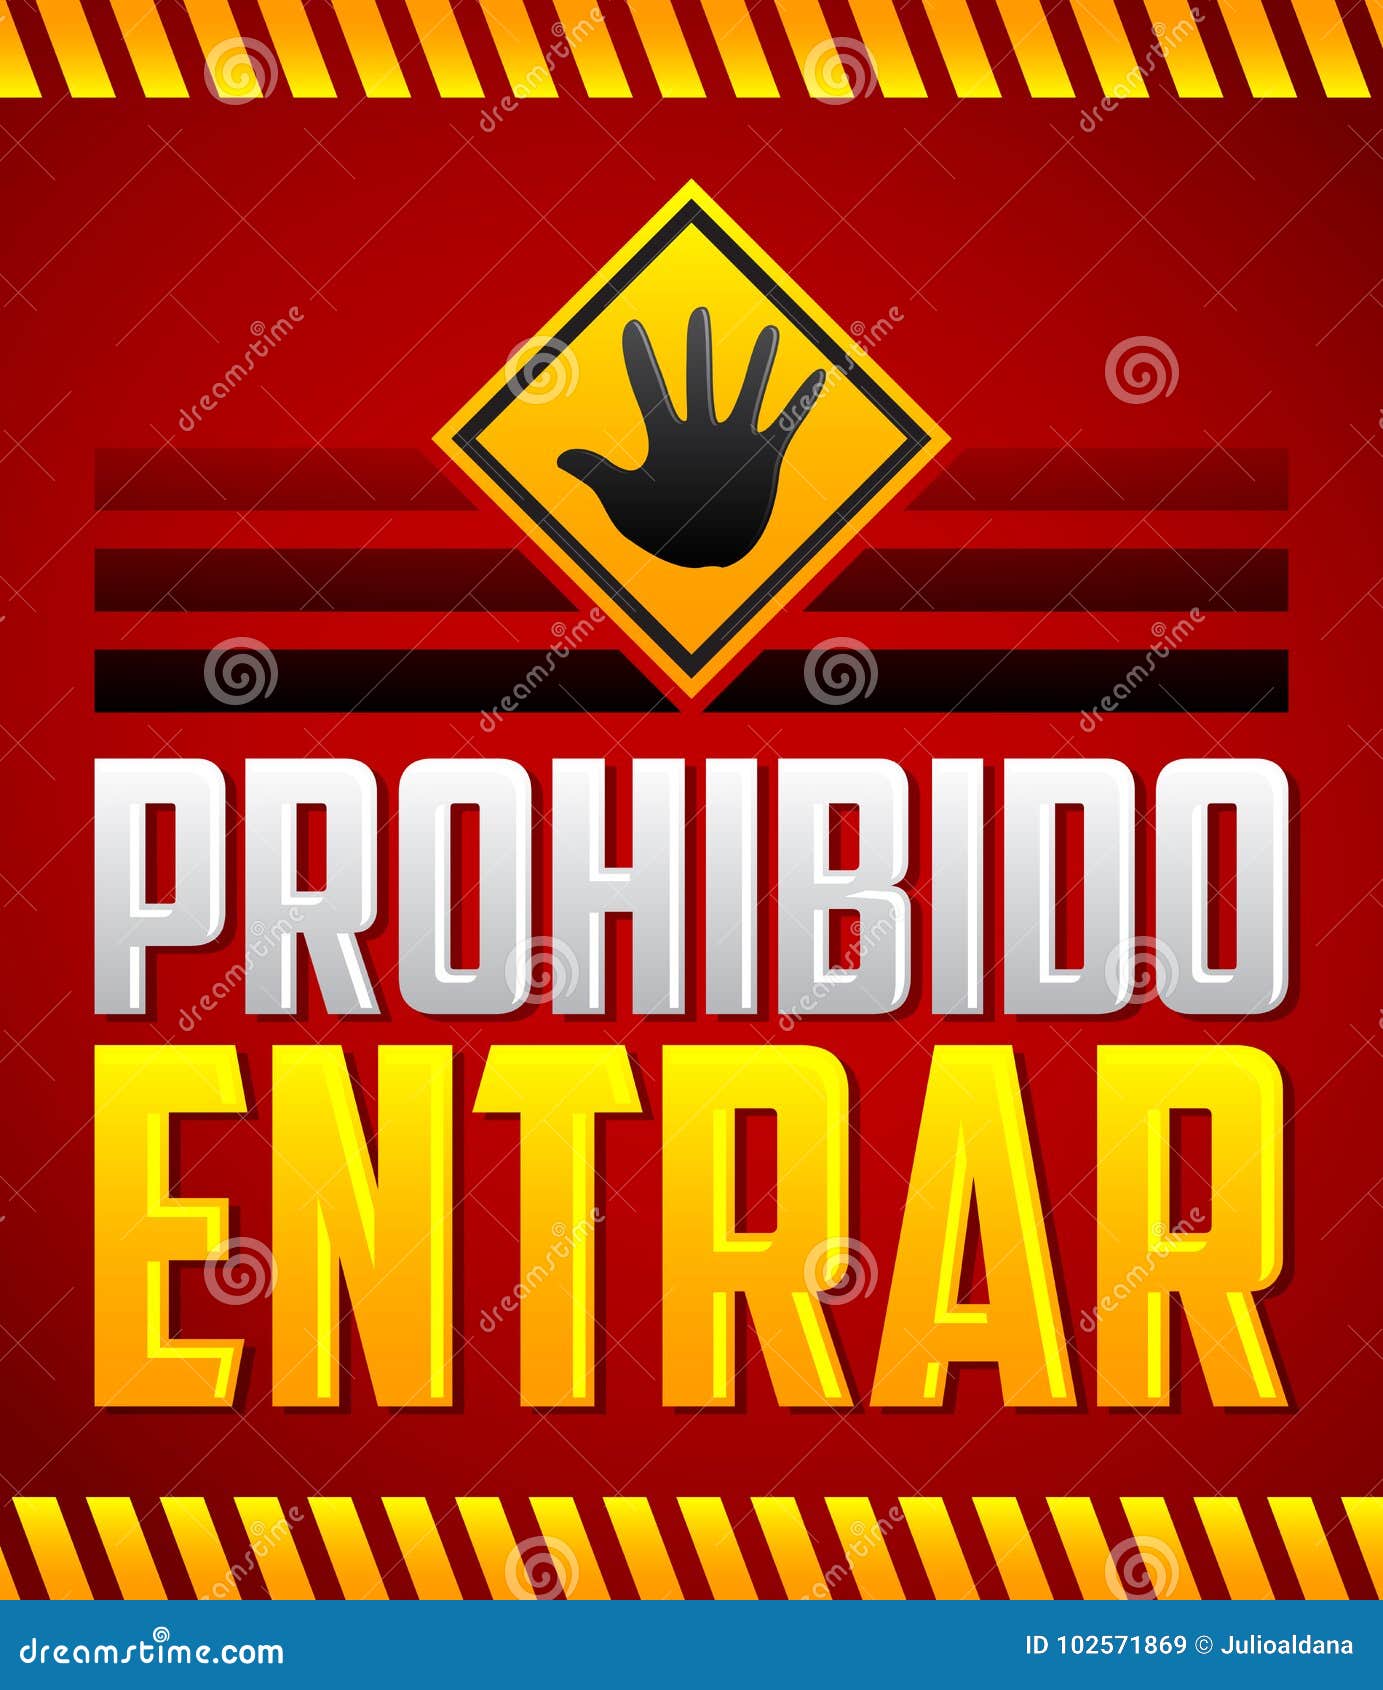 prohibido entrar - entrance prohibited, do not enter spanish text